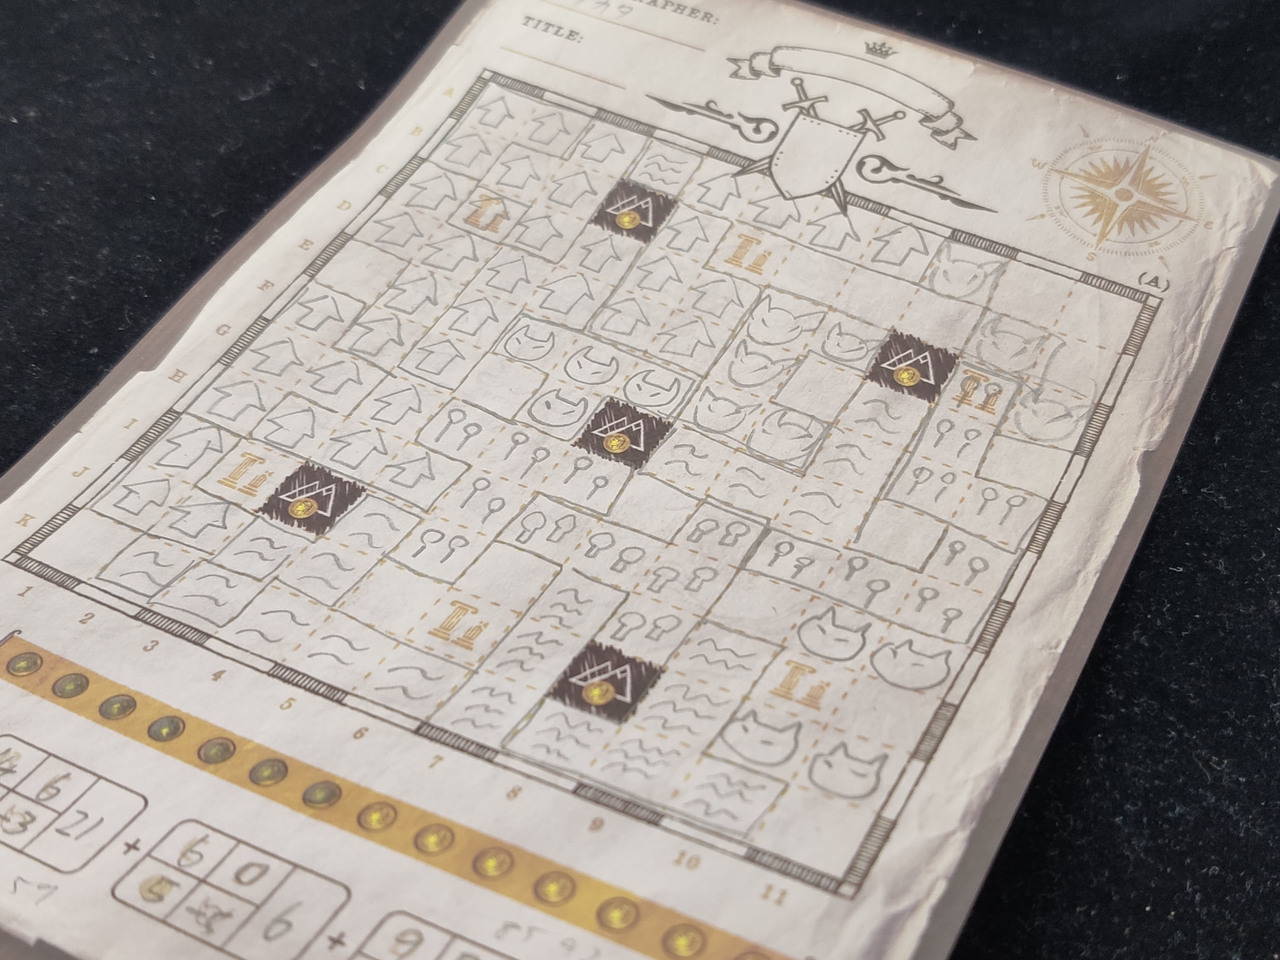 Boardgame Memo カートグラファー 評価 5 10 ロールプレイヤー の世界観を継承した紙ペンゲーム